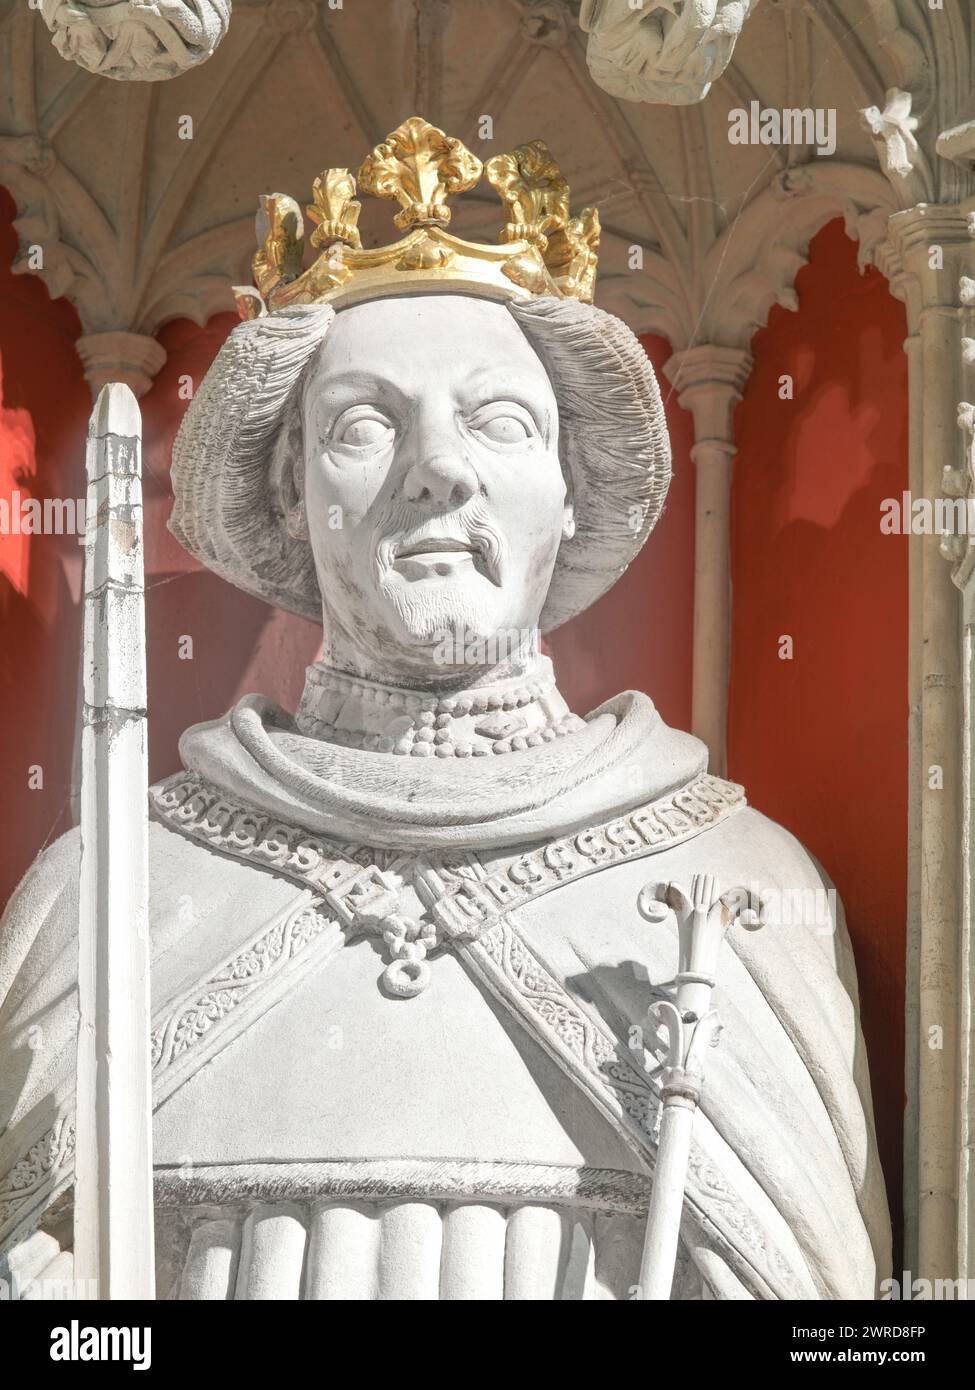 Statue des mittelalterlichen englischen Königs Heinrich IV., auf der Leinwand im Münster (Kathedrale) in York, England. Stockfoto